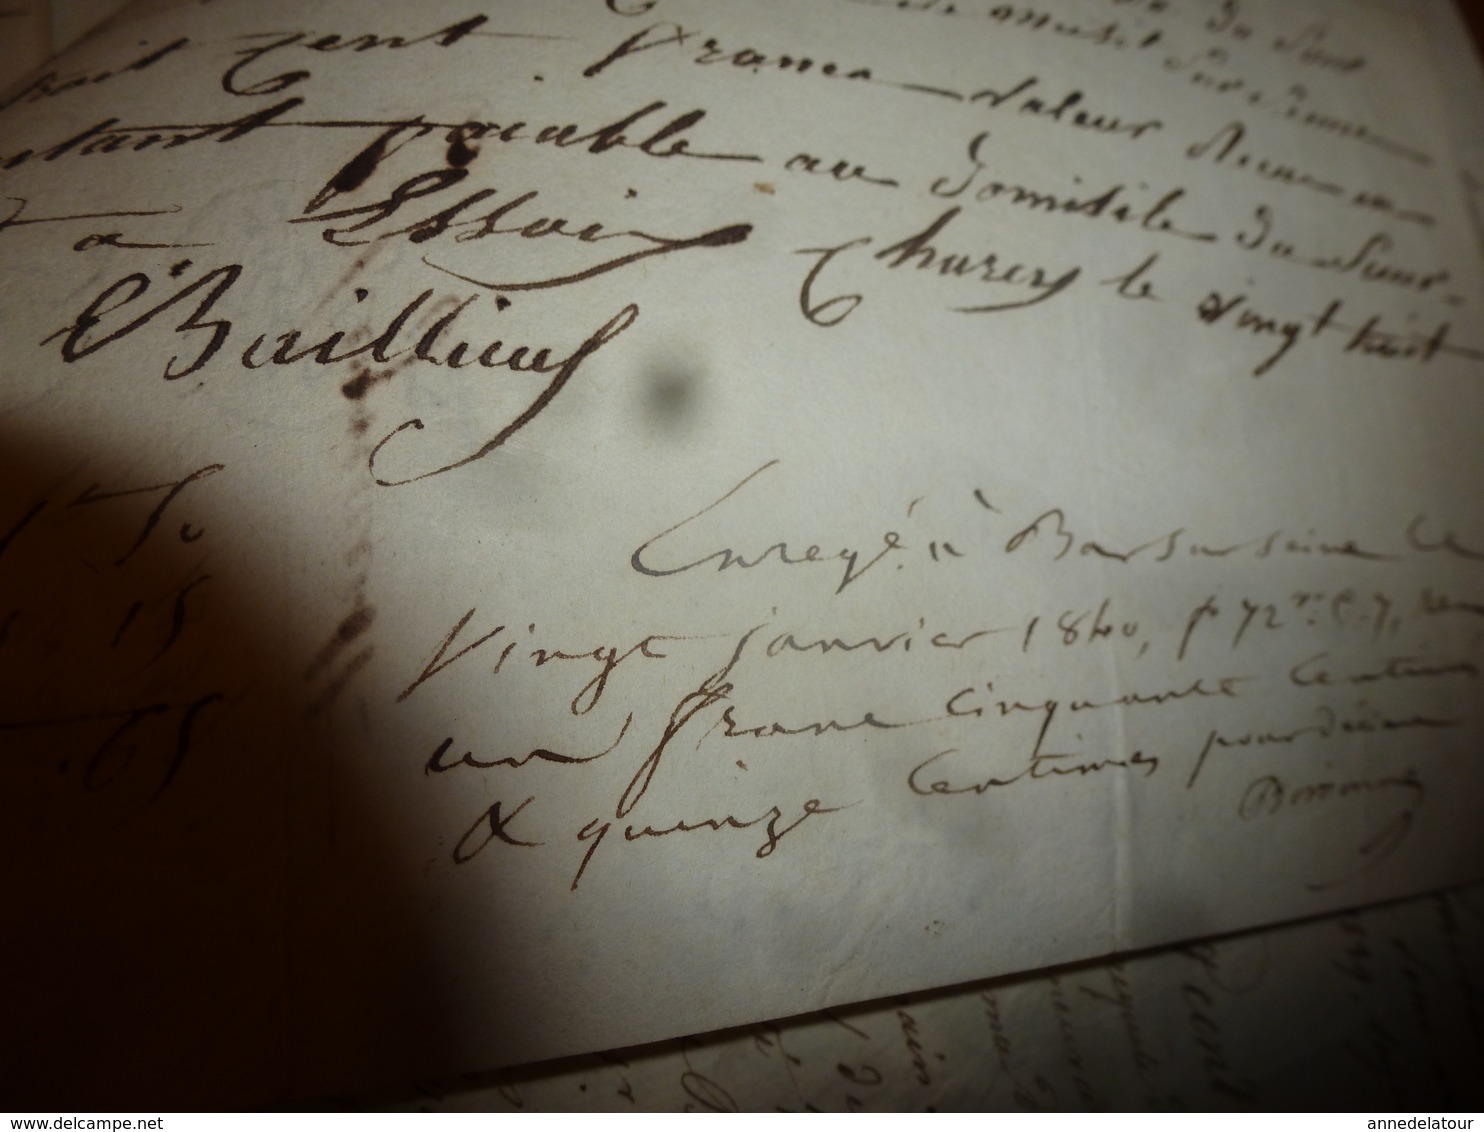 1840 Liasse de Manuscrits notariés avec cachets (sec ,mouillés) concerne Baillieux,Regnault à Mussy-su- Seine, etc